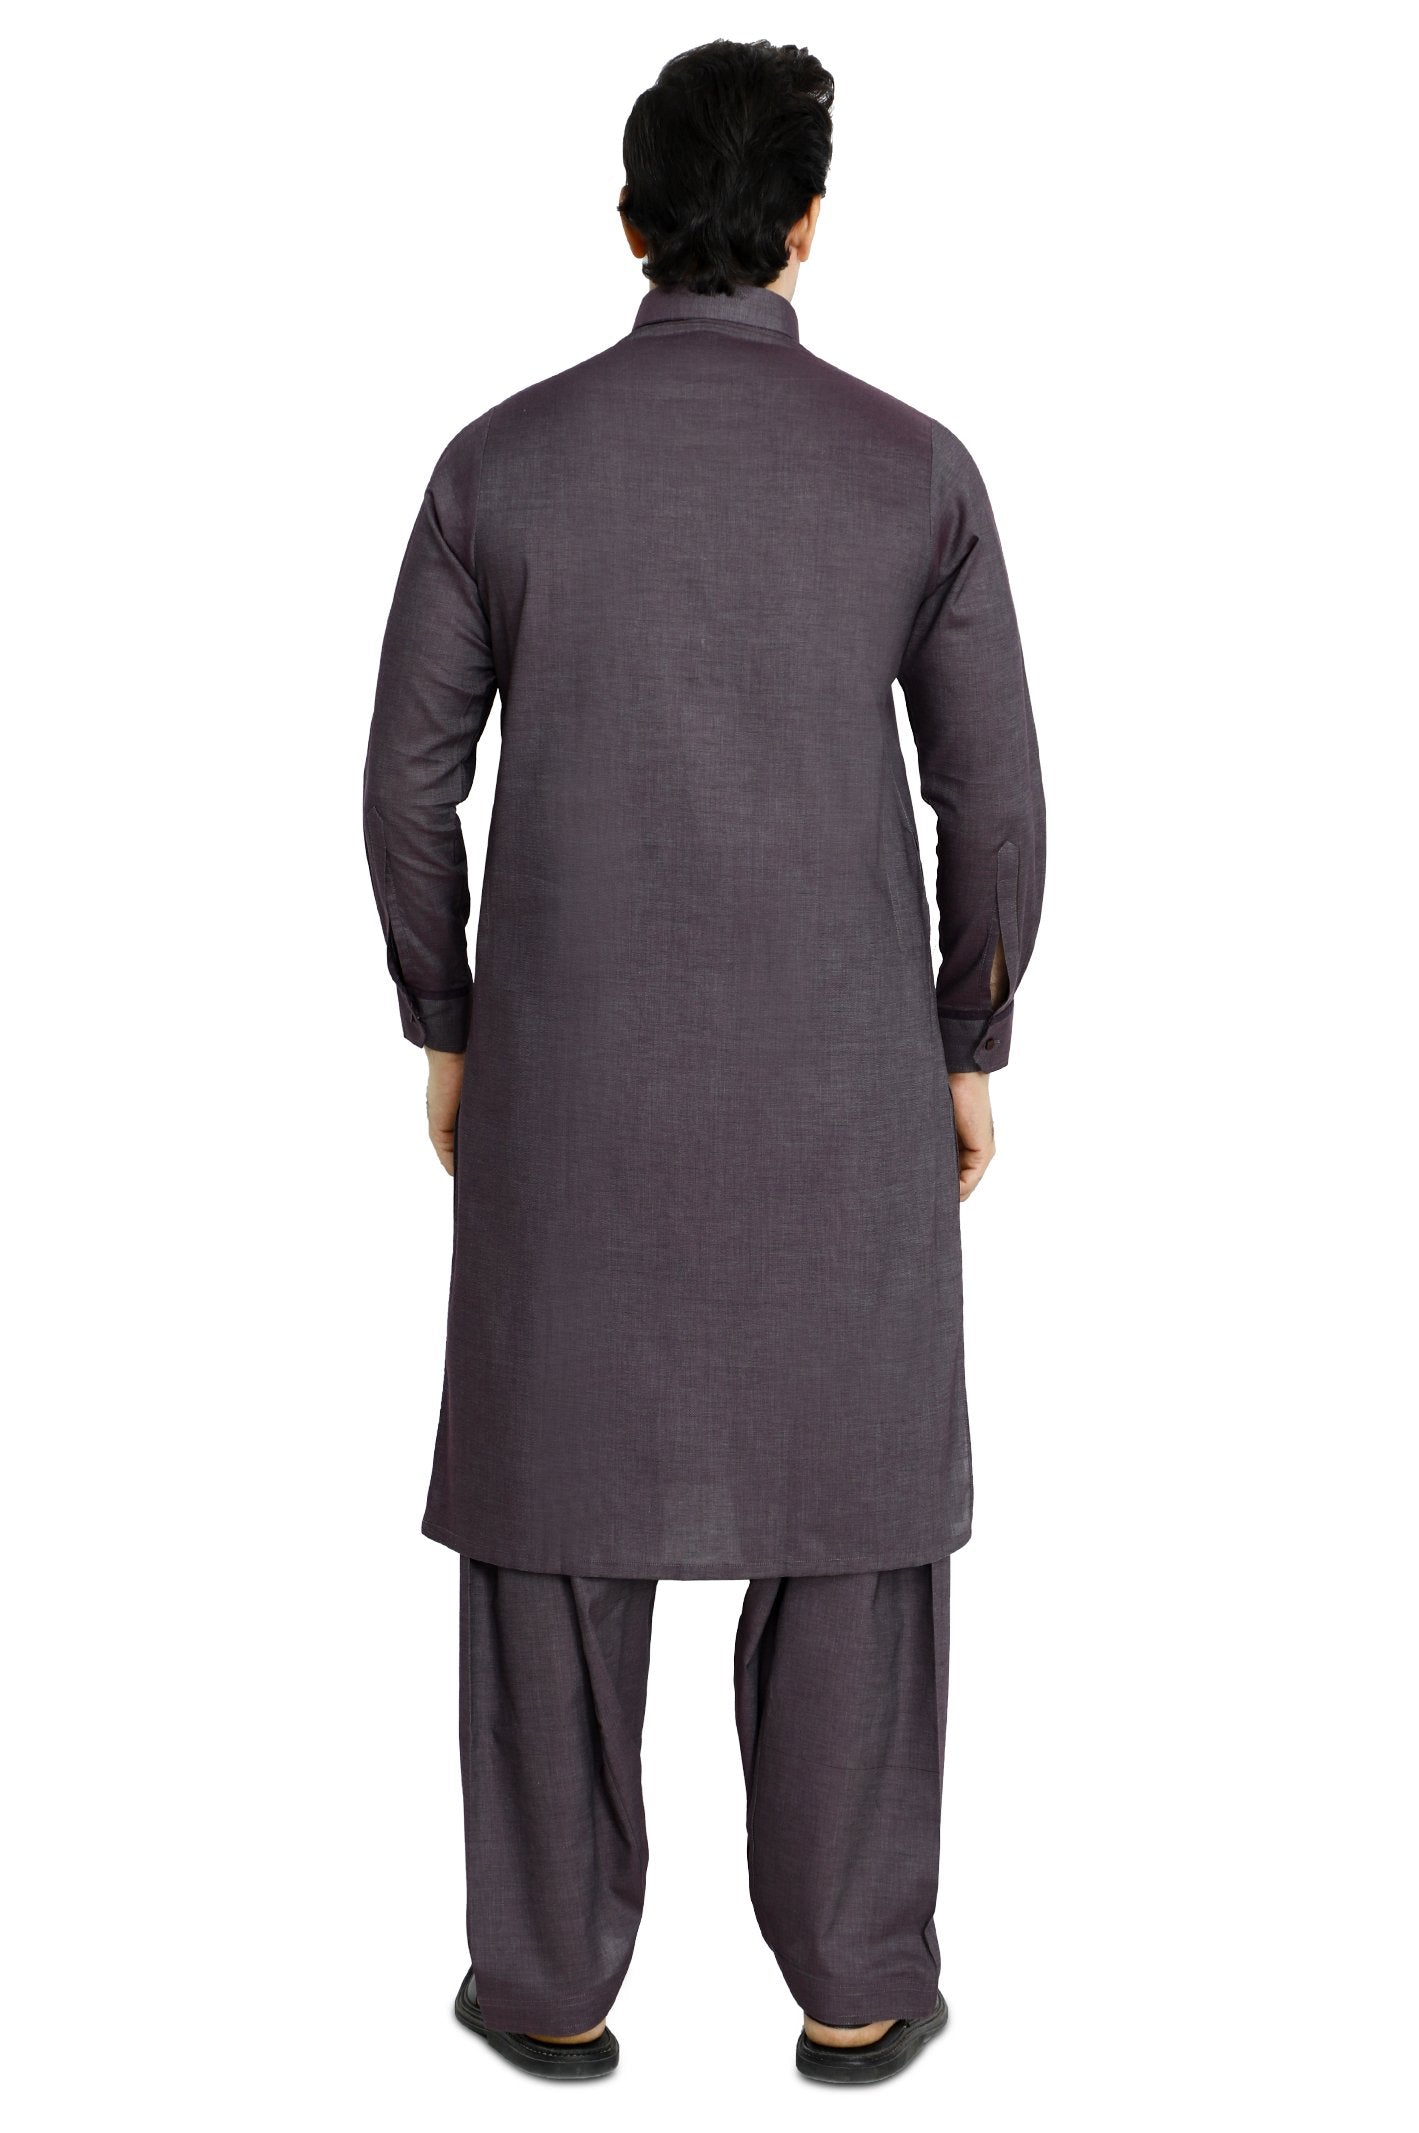 Formal Shalwar Suit for Men - EG2898-MAROON